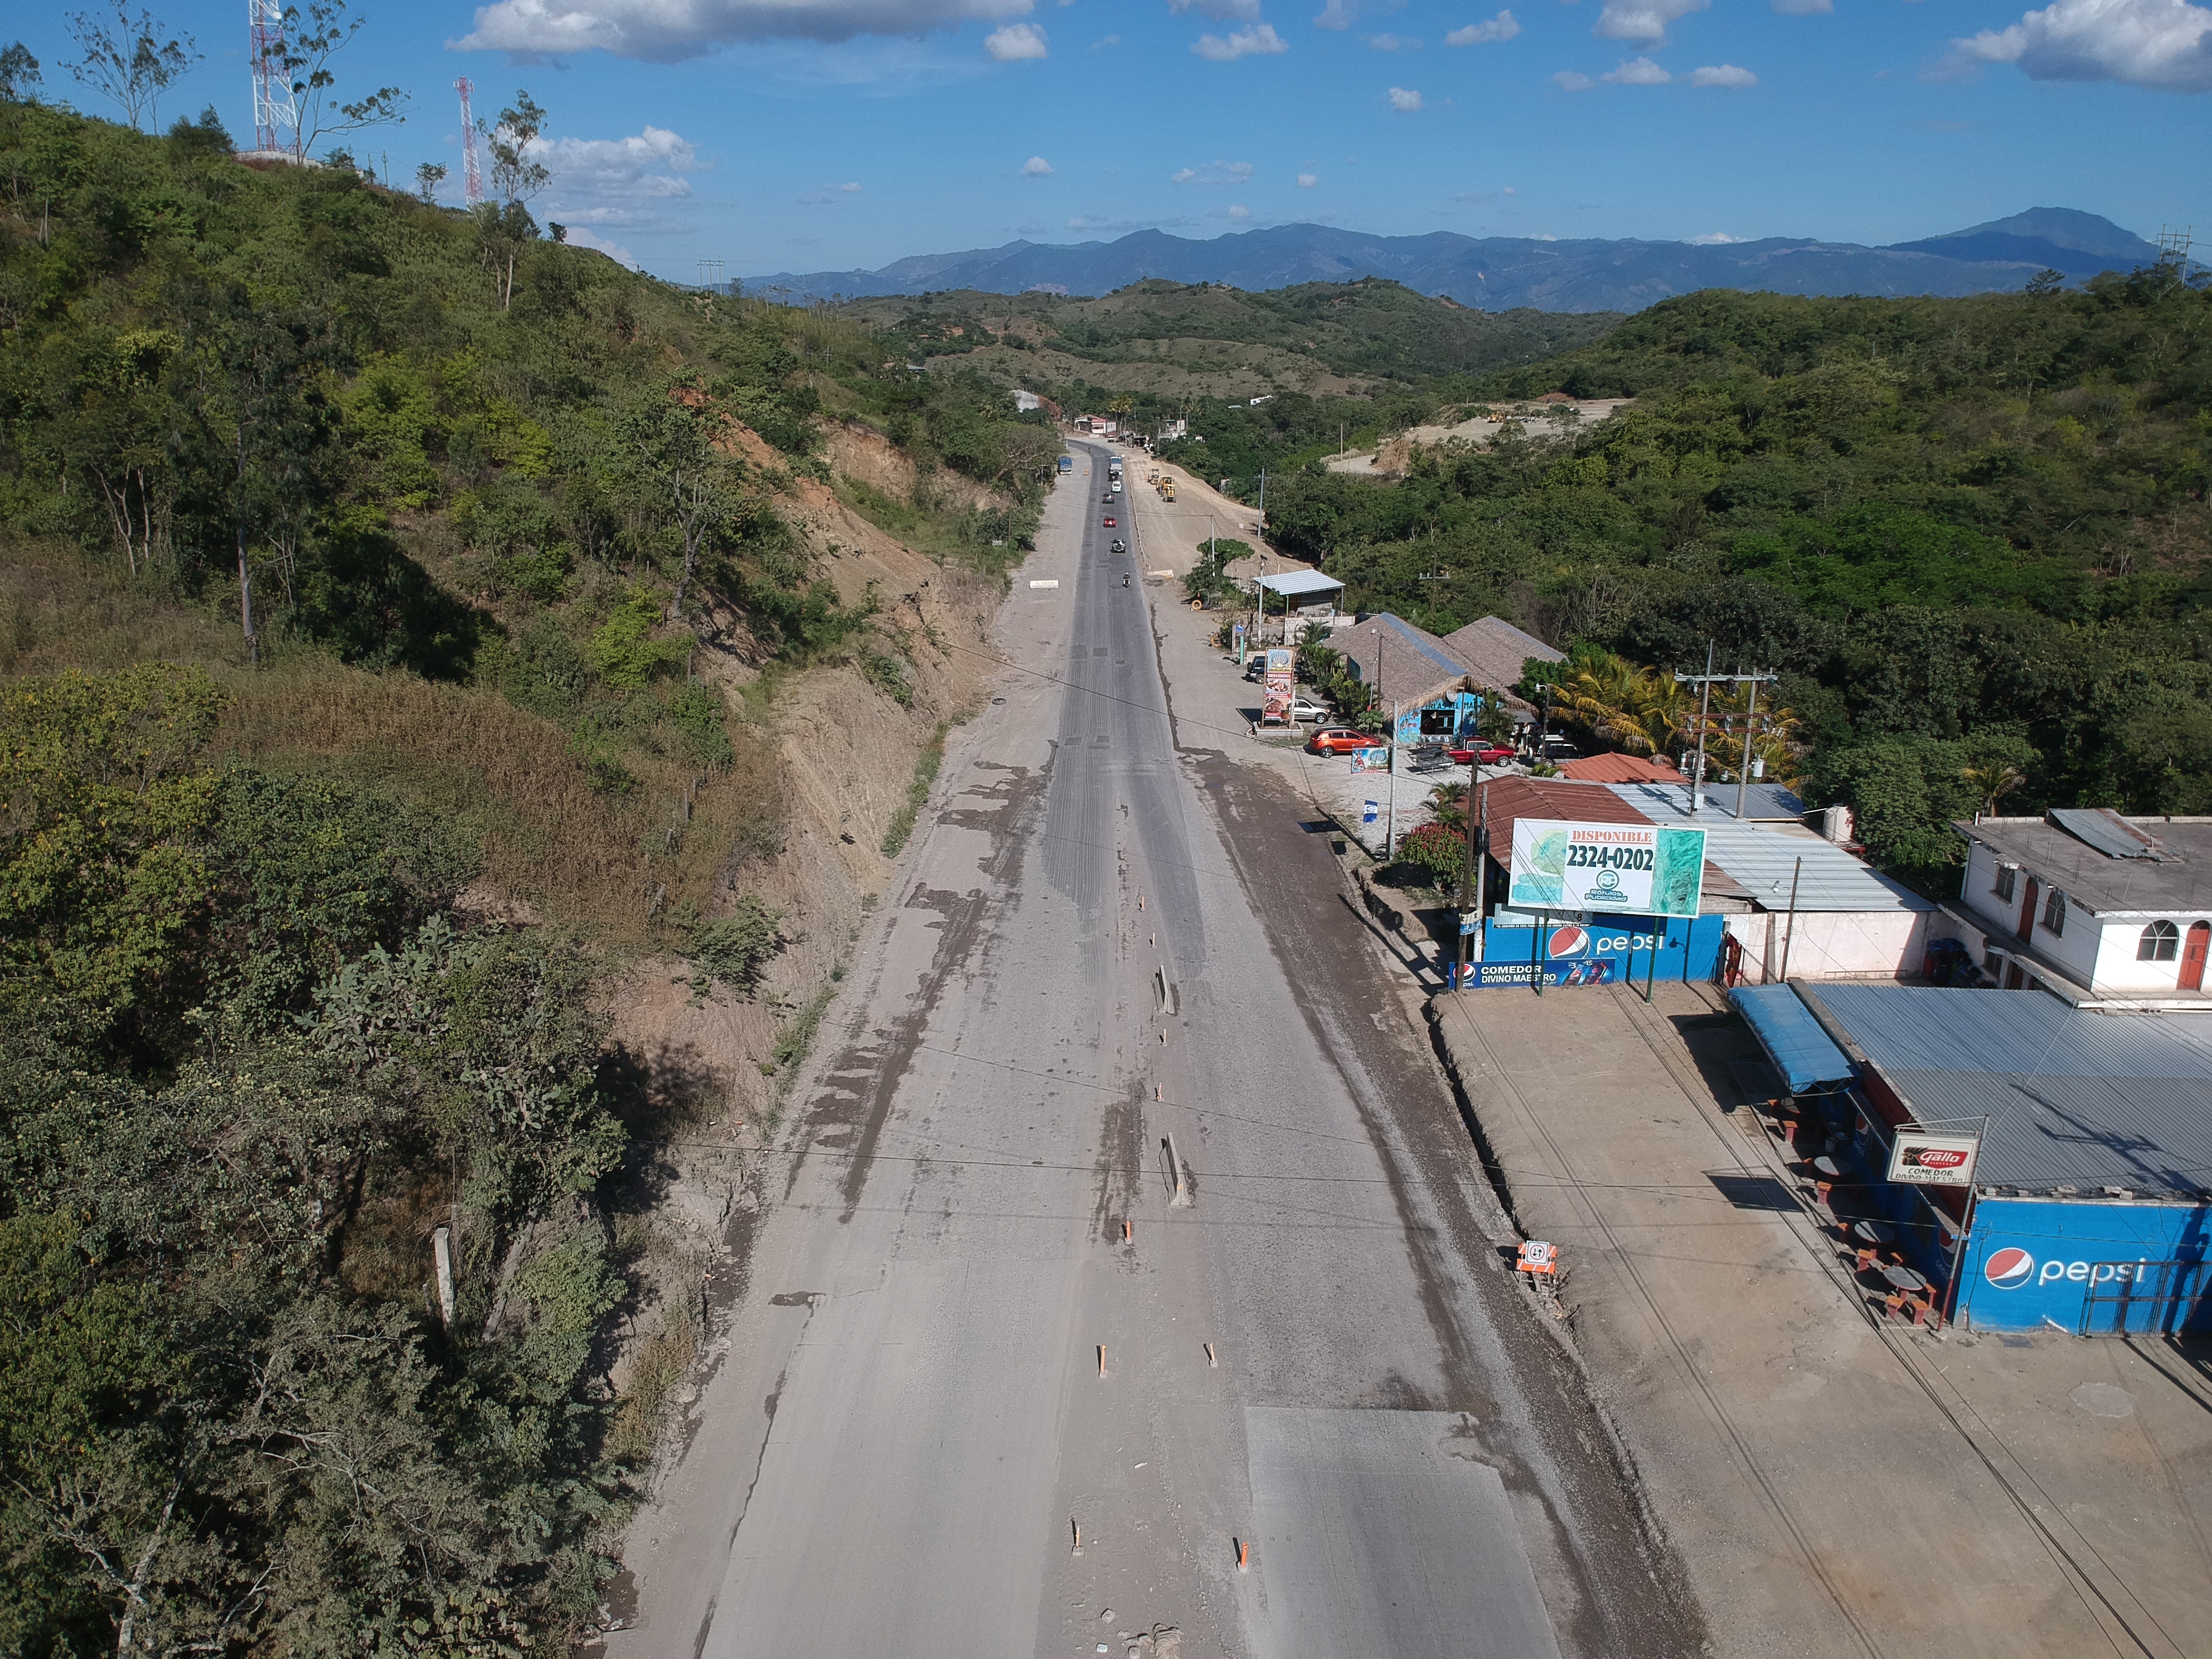 La inversión estatal en proyectos de infraestructura puede mantener la estabilidad económica, ante los riesgos de una posible desaceleración por efecto del coronavirus. (Foto Prensa Libre: Hemeroteca) 